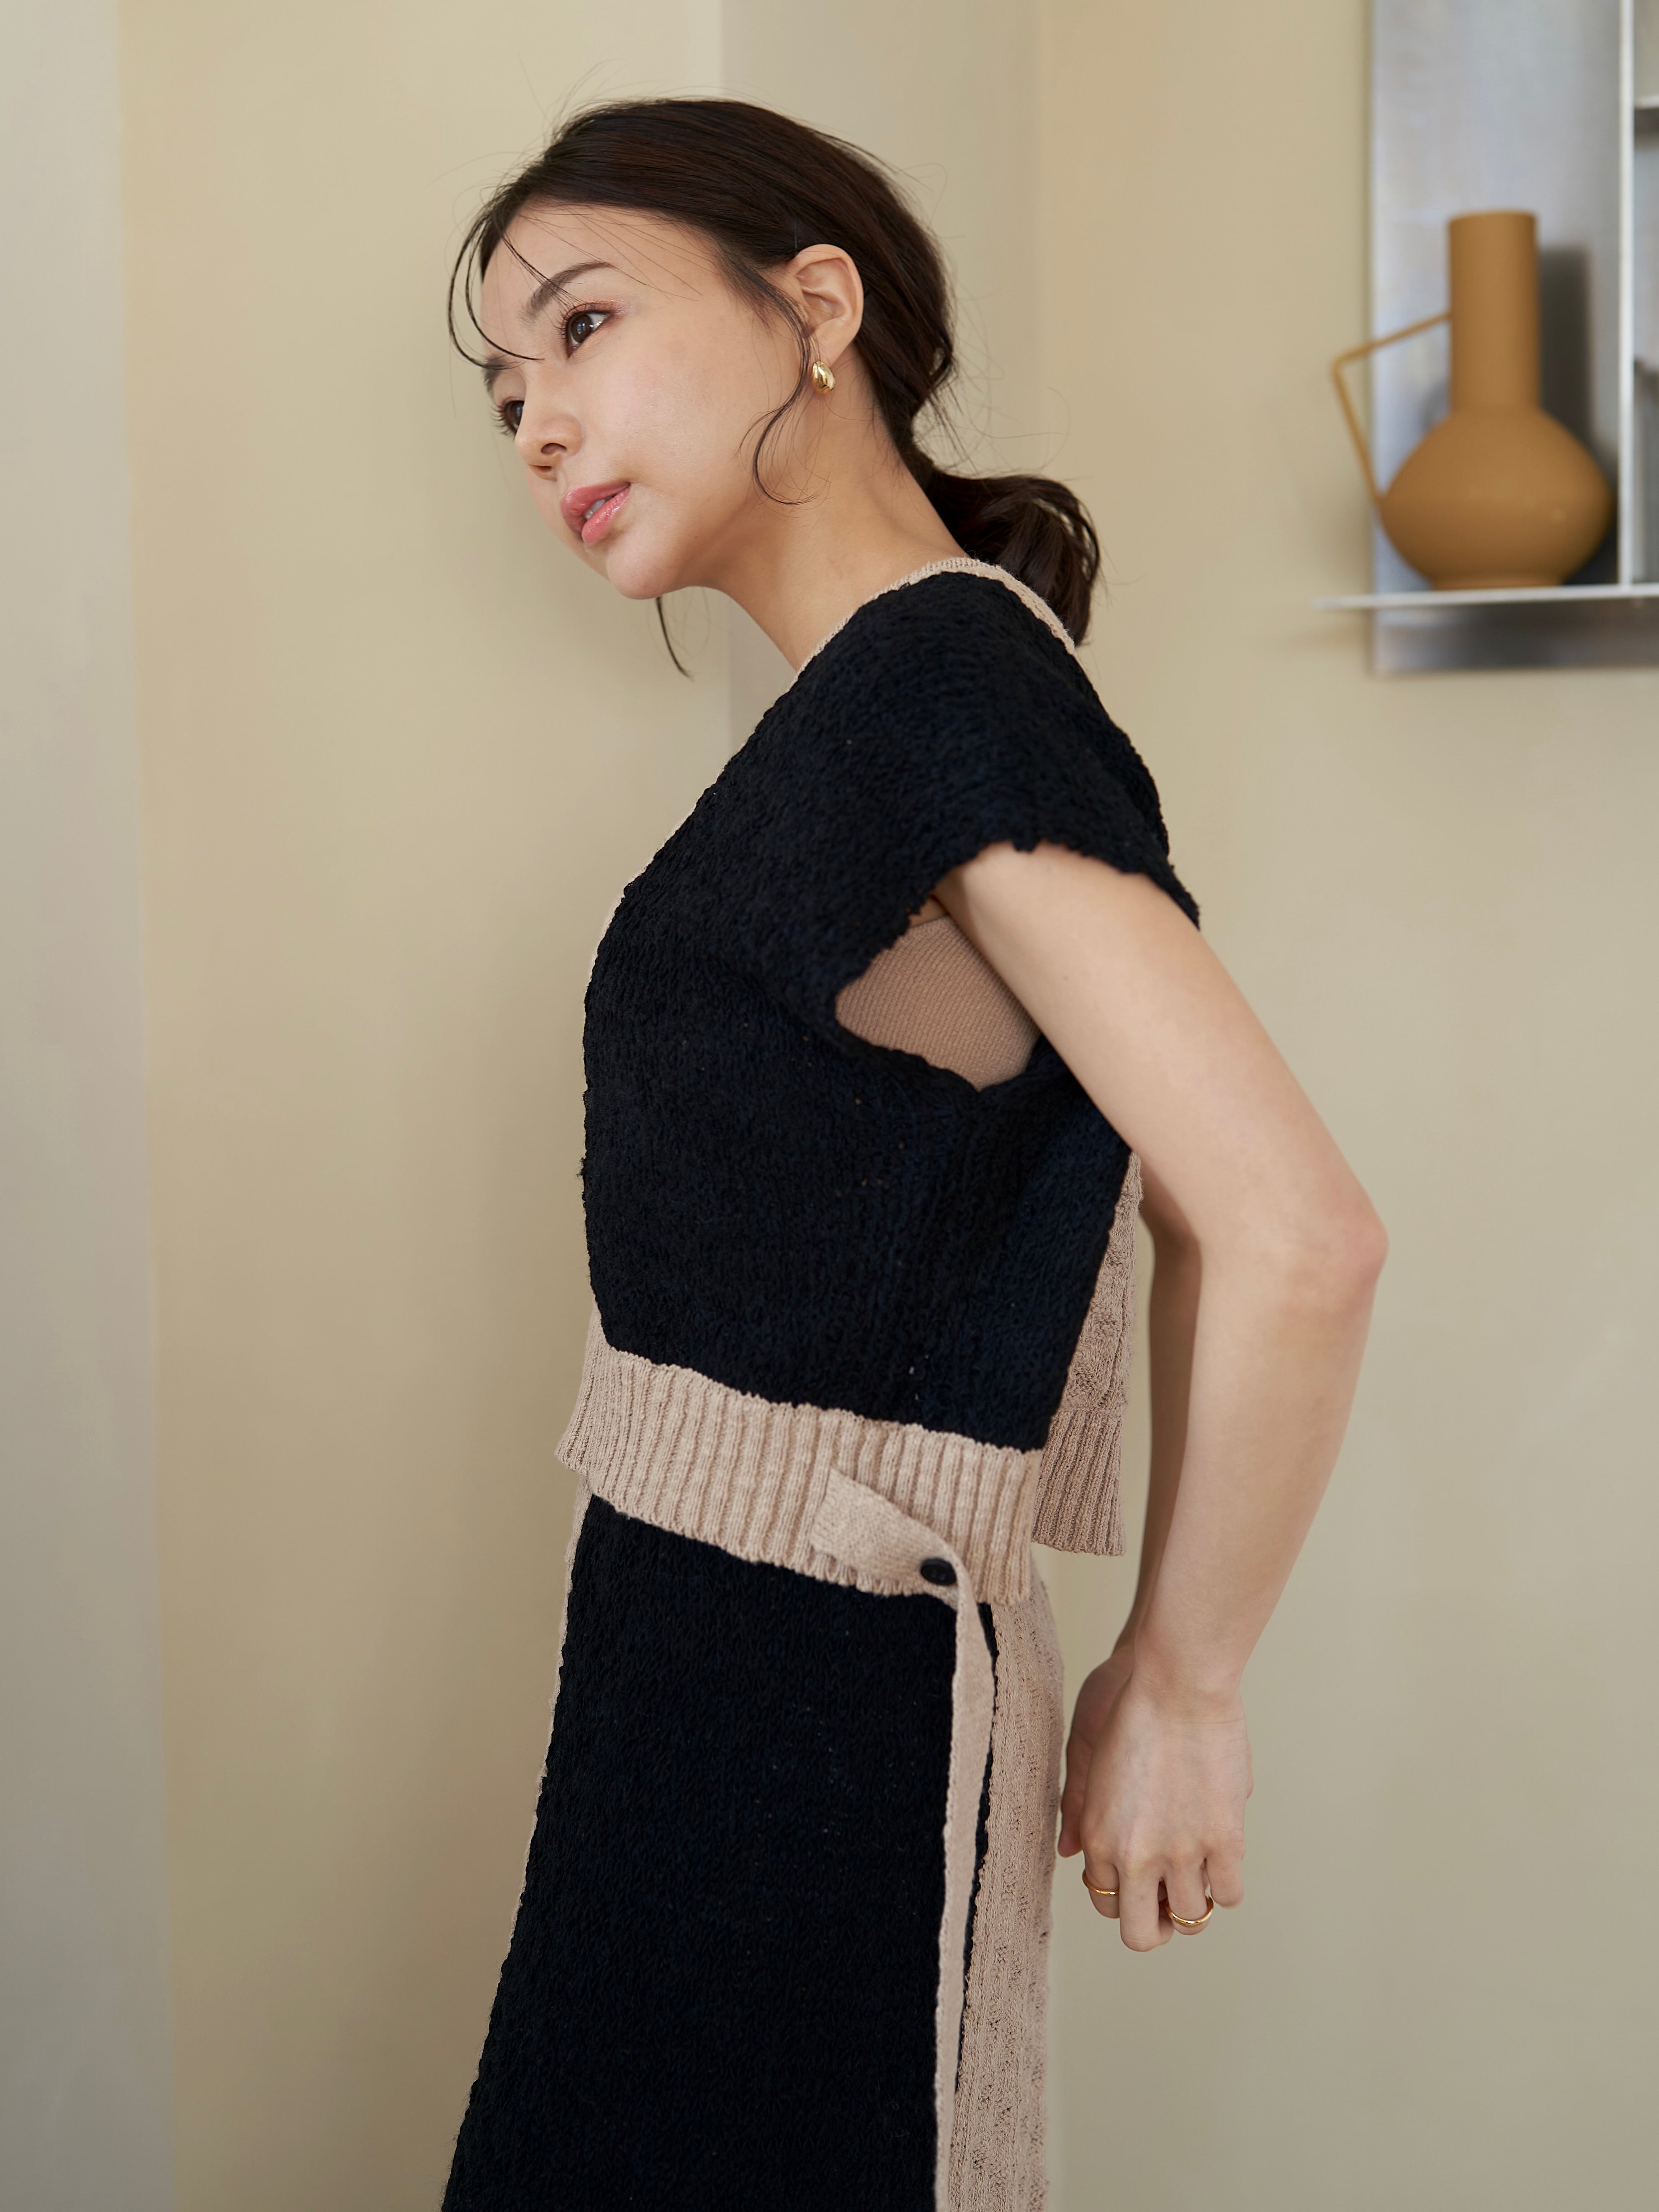 tape yarn knit skirt – nuyuh